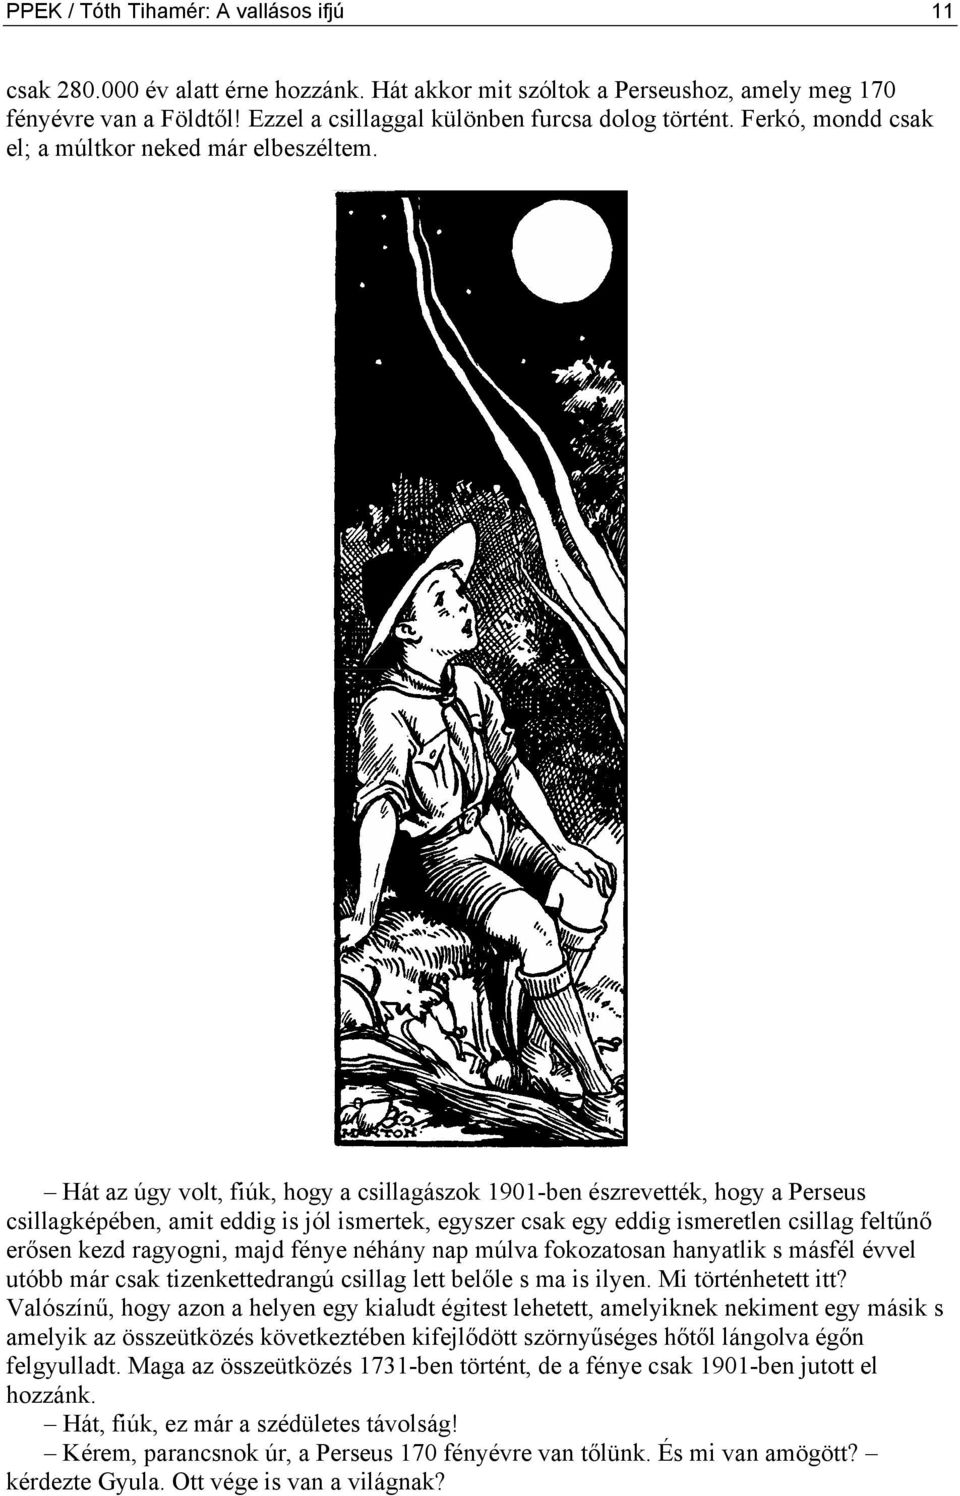 Hát az úgy volt, fiúk, hogy a csillagászok 1901-ben észrevették, hogy a Perseus csillagképében, amit eddig is jól ismertek, egyszer csak egy eddig ismeretlen csillag feltűnő erősen kezd ragyogni,